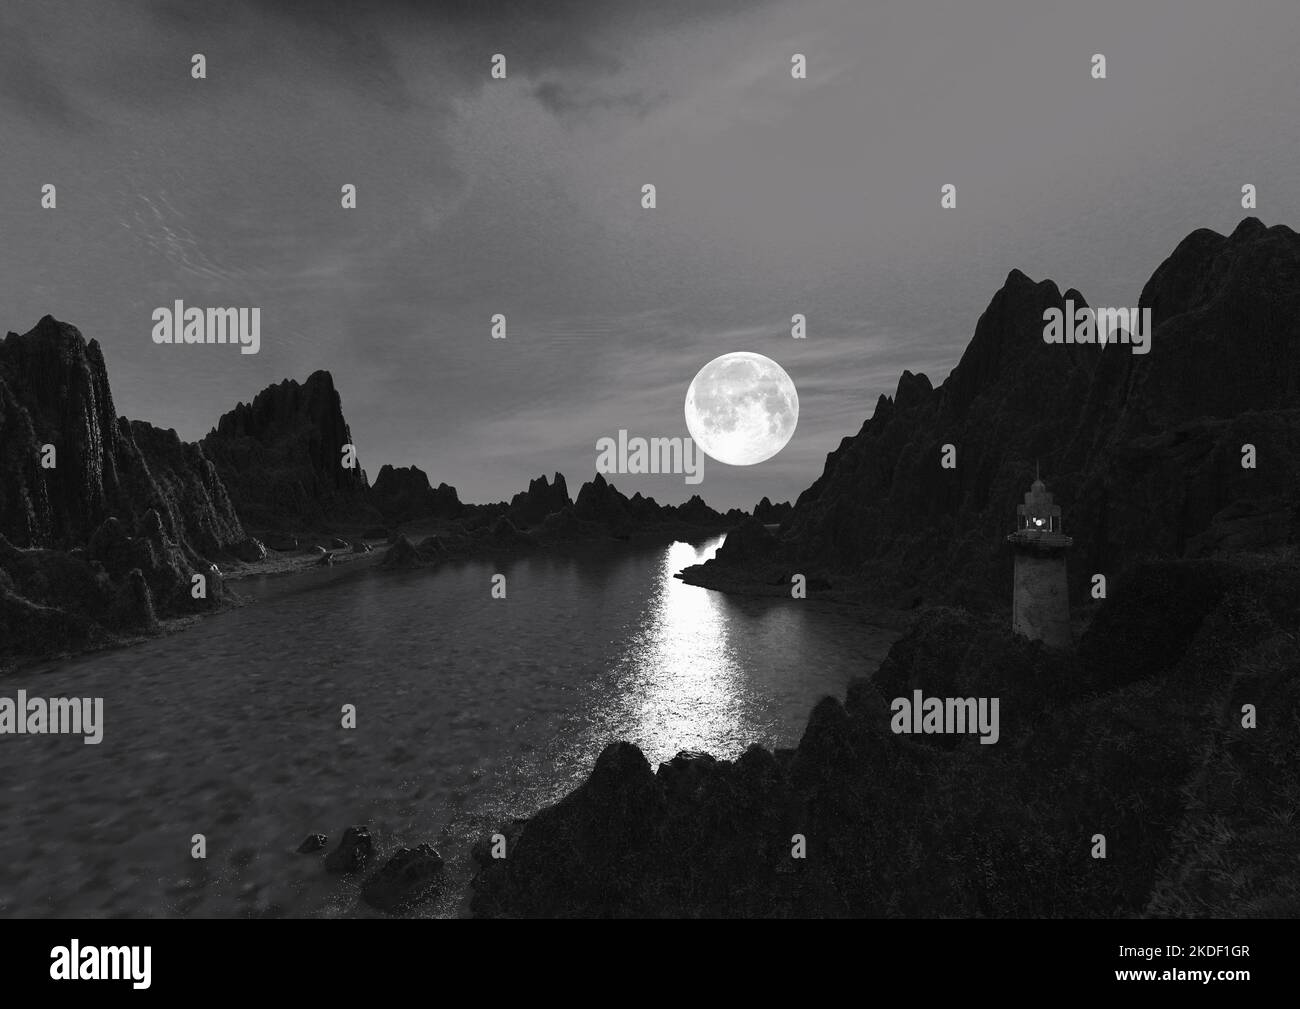 Grafica digitale di paesaggi in bianco e nero Foto Stock